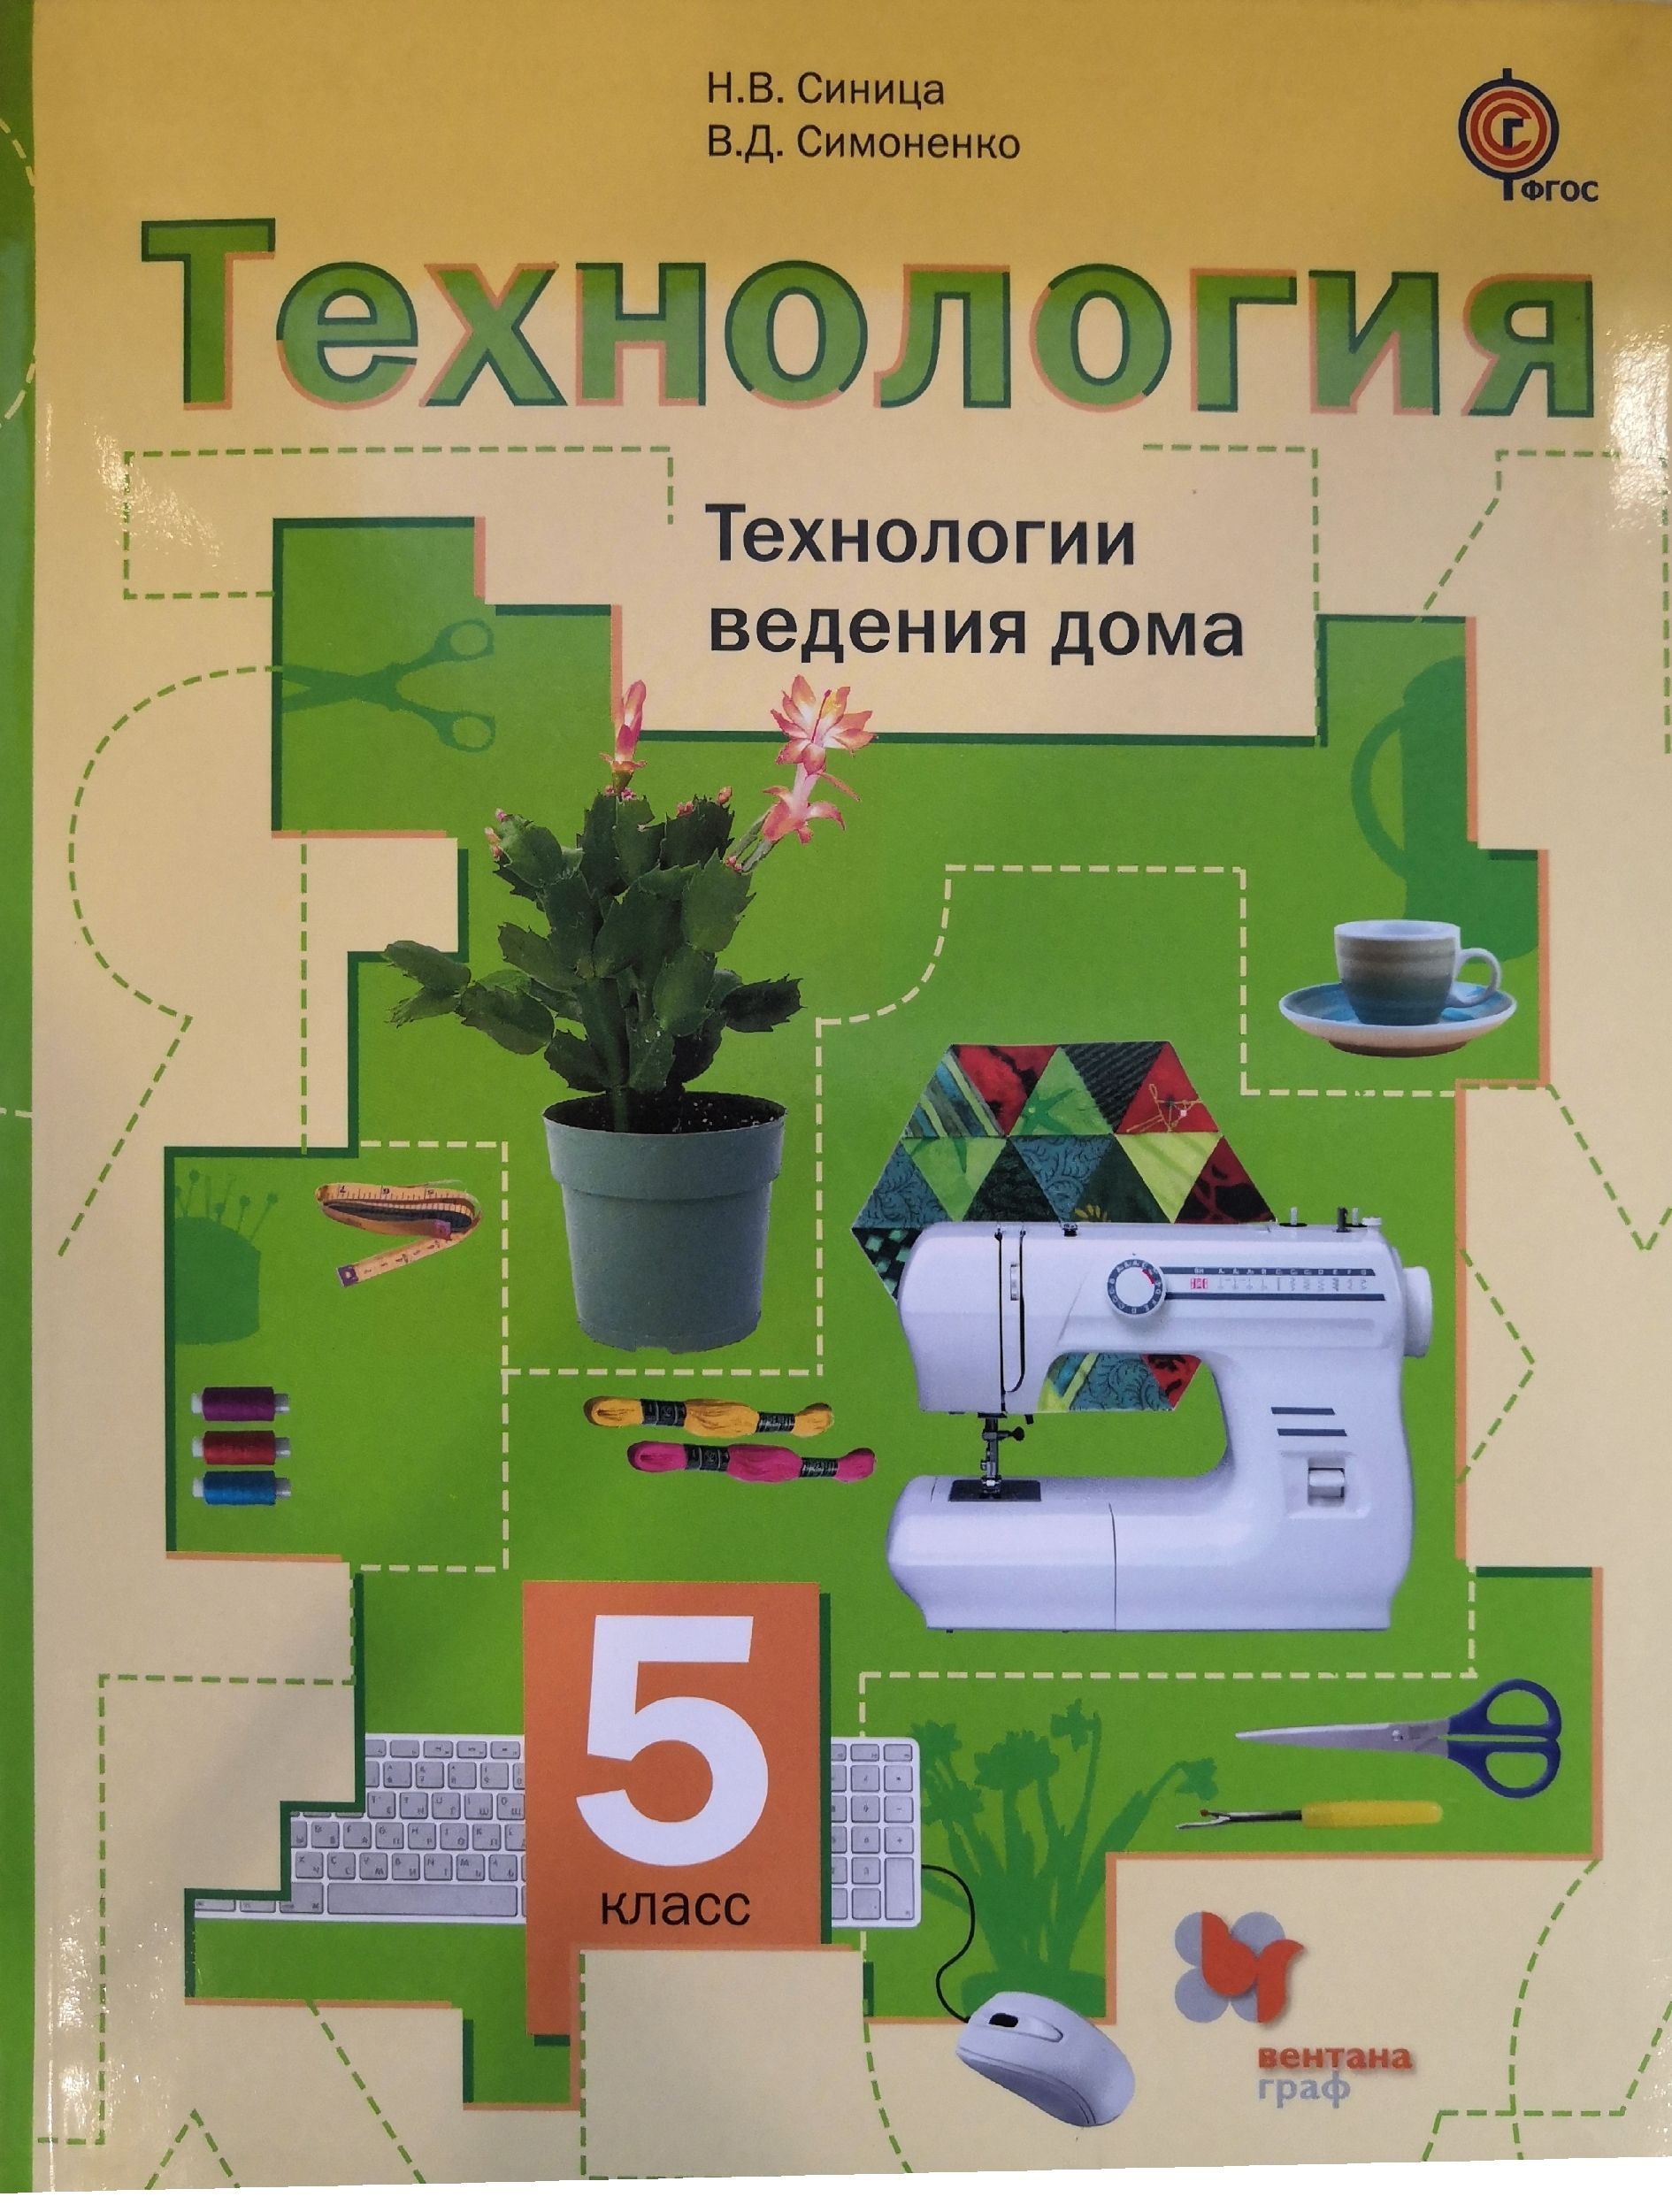 Книга по технологии синица н. Симоненко